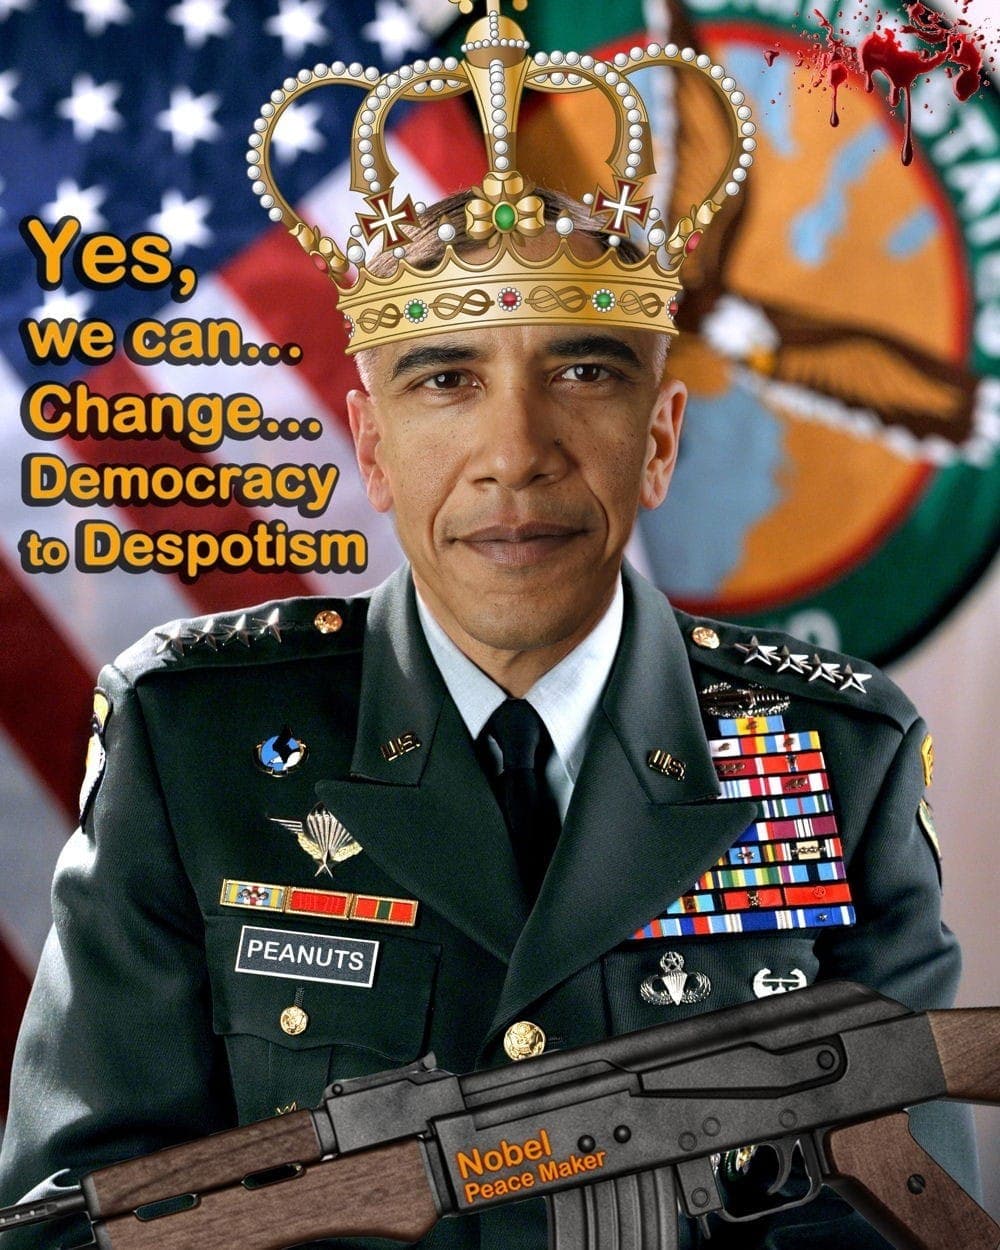 King Barack Hussein Obama II